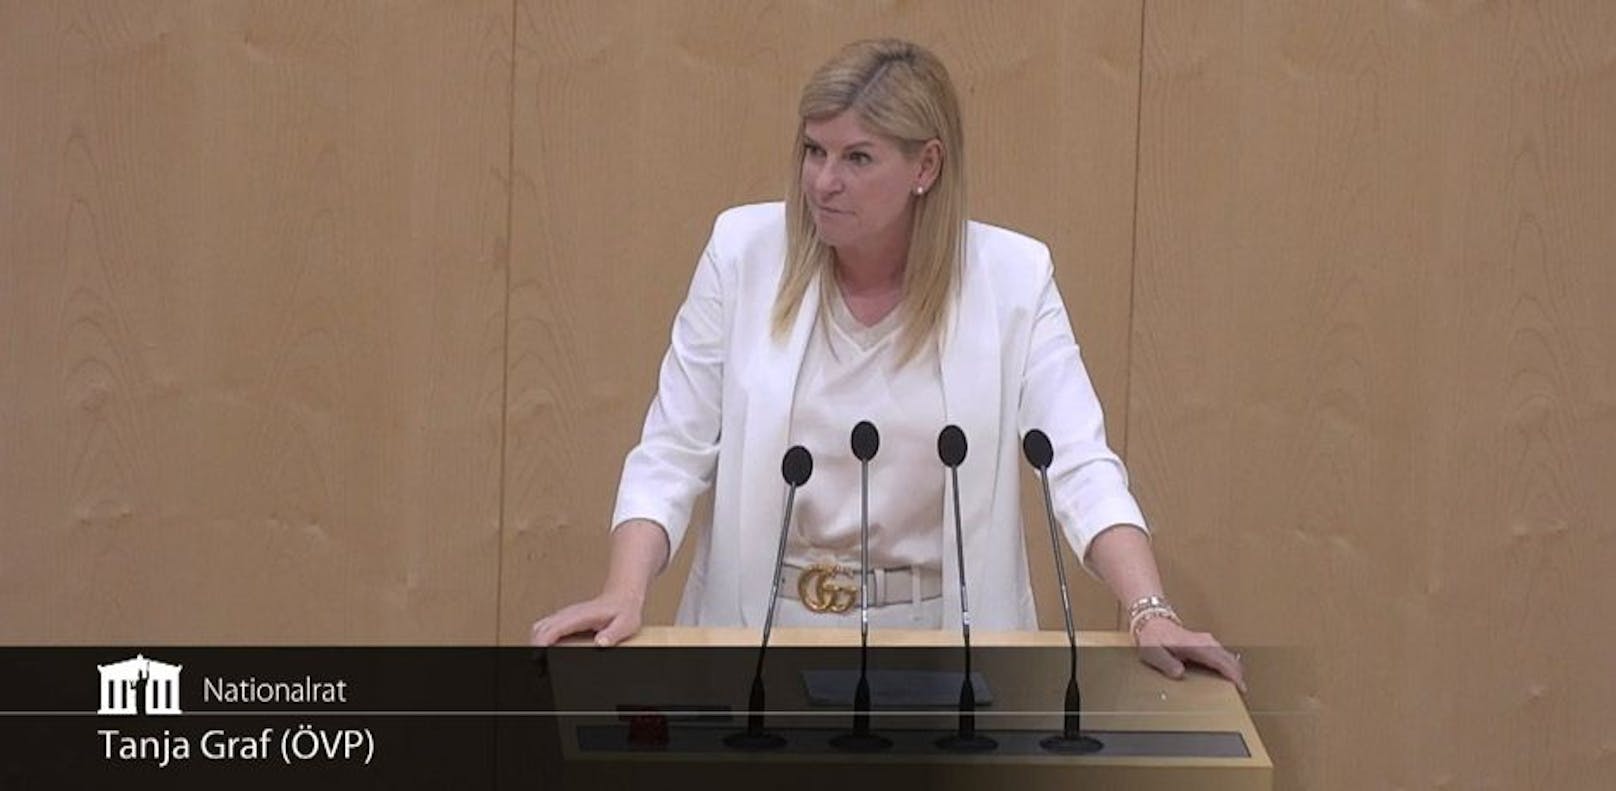 ÖVP-Lady kommt mit Gucci-Gürtel zu Teuerungs-Debatte